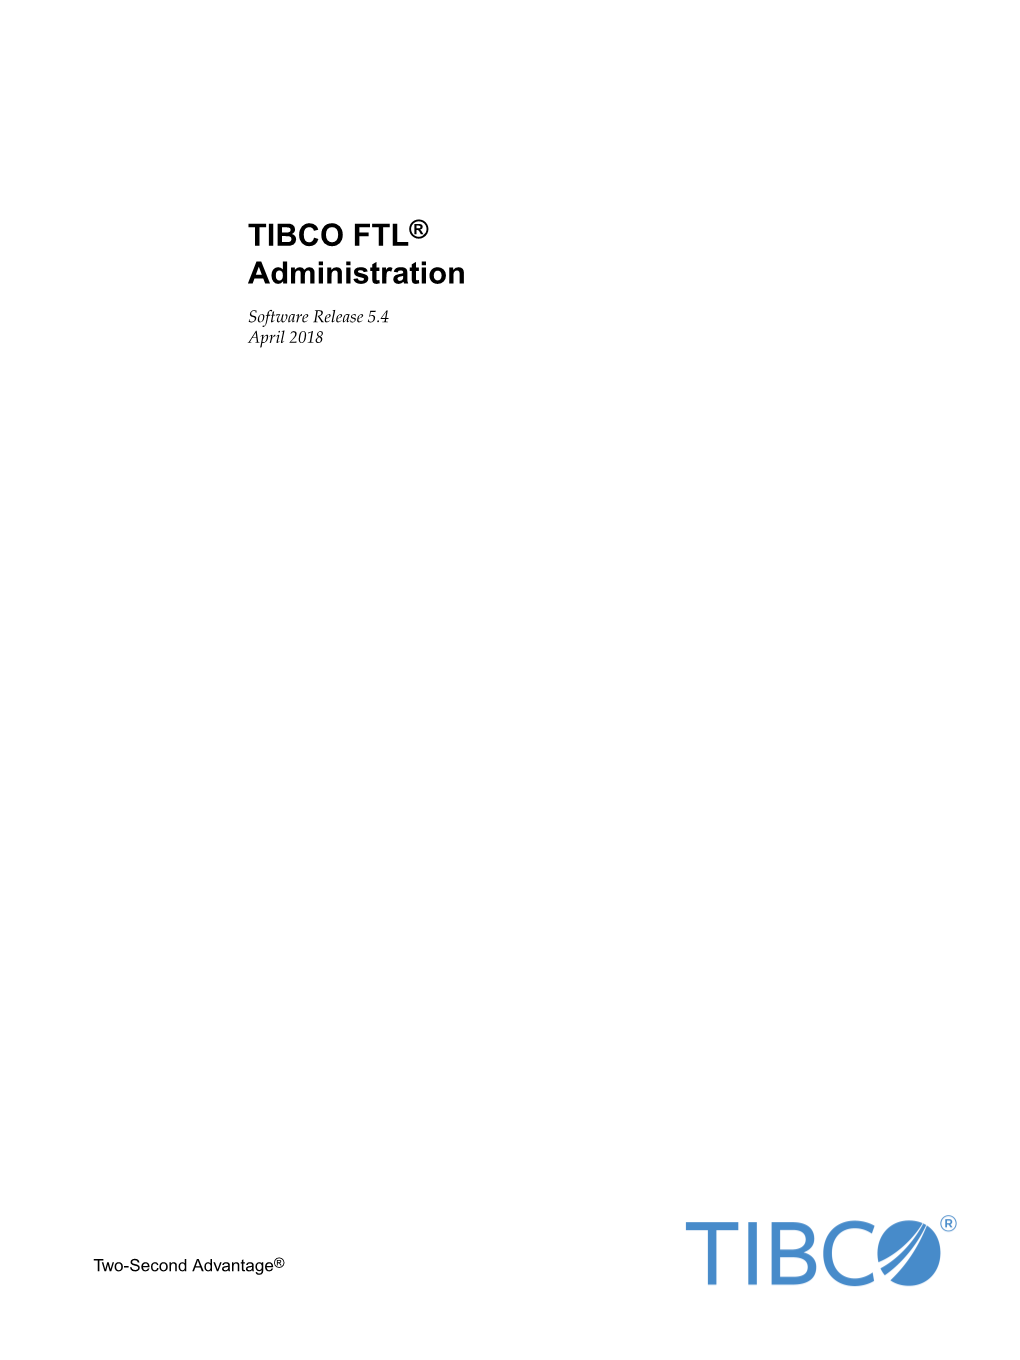 TIBCO FTL® Administration